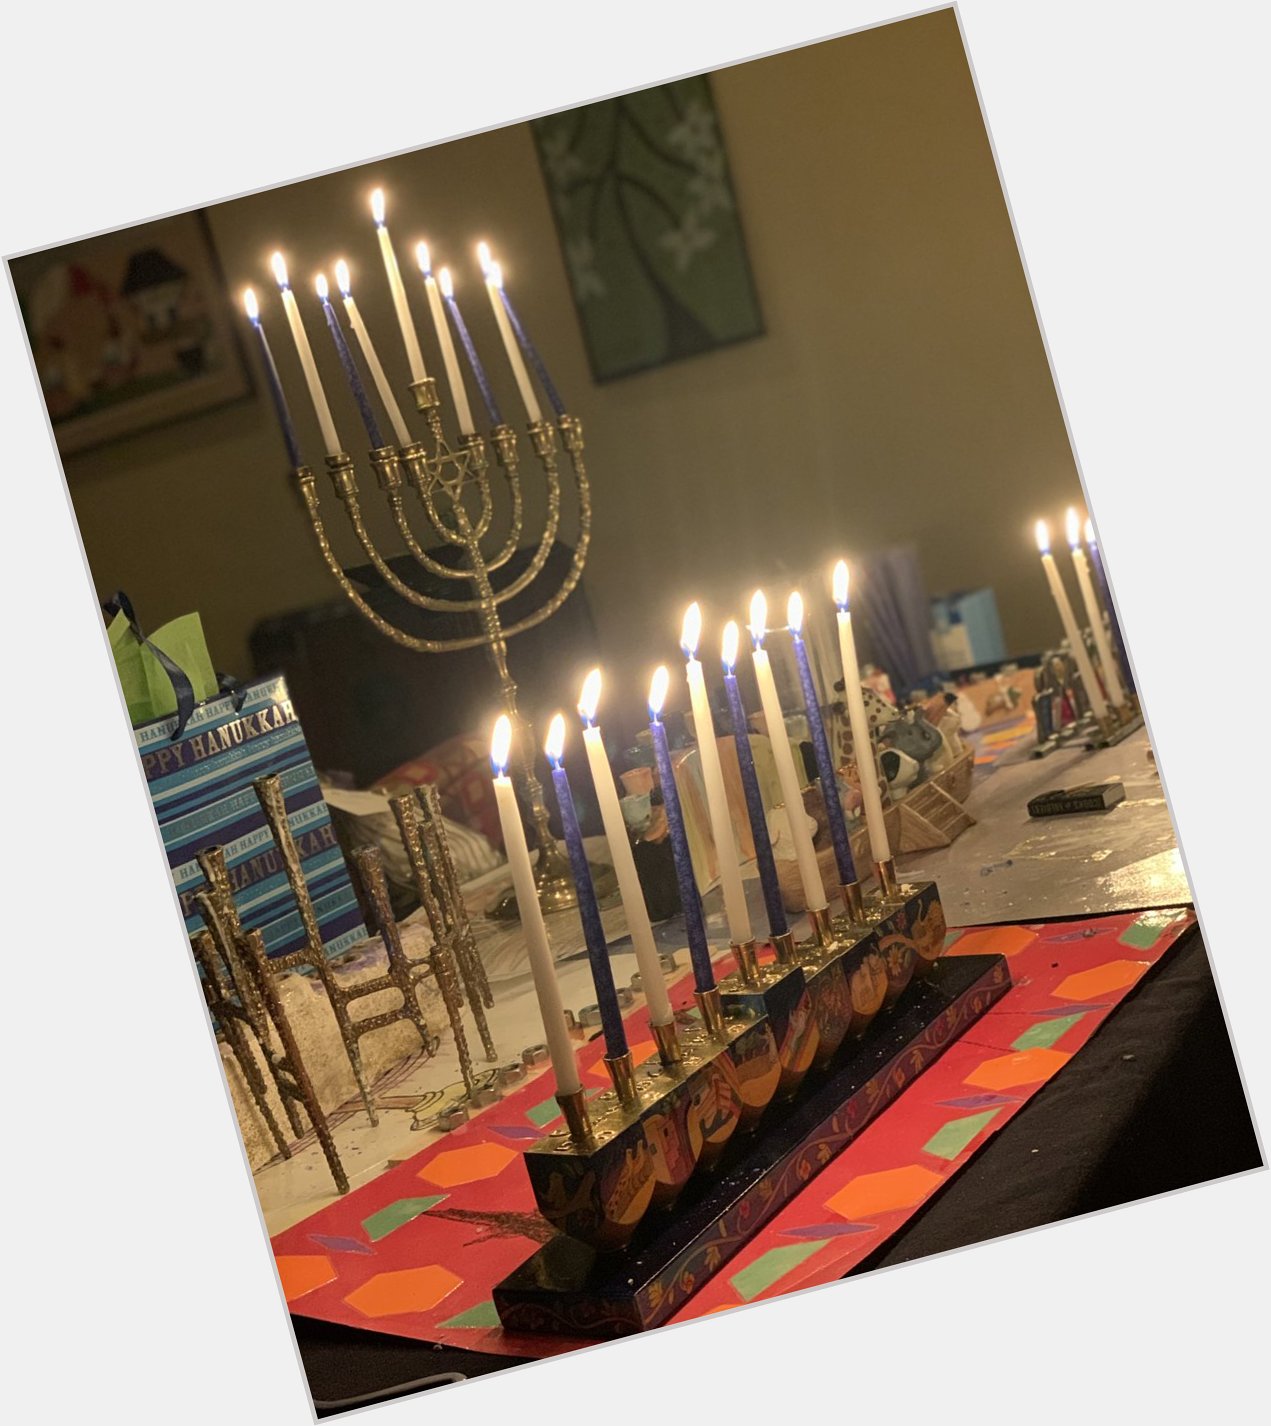 Happy last night of Hanukkah, Deb Haaland Day, and Sarah Paulson s birthday to all who celebrate 